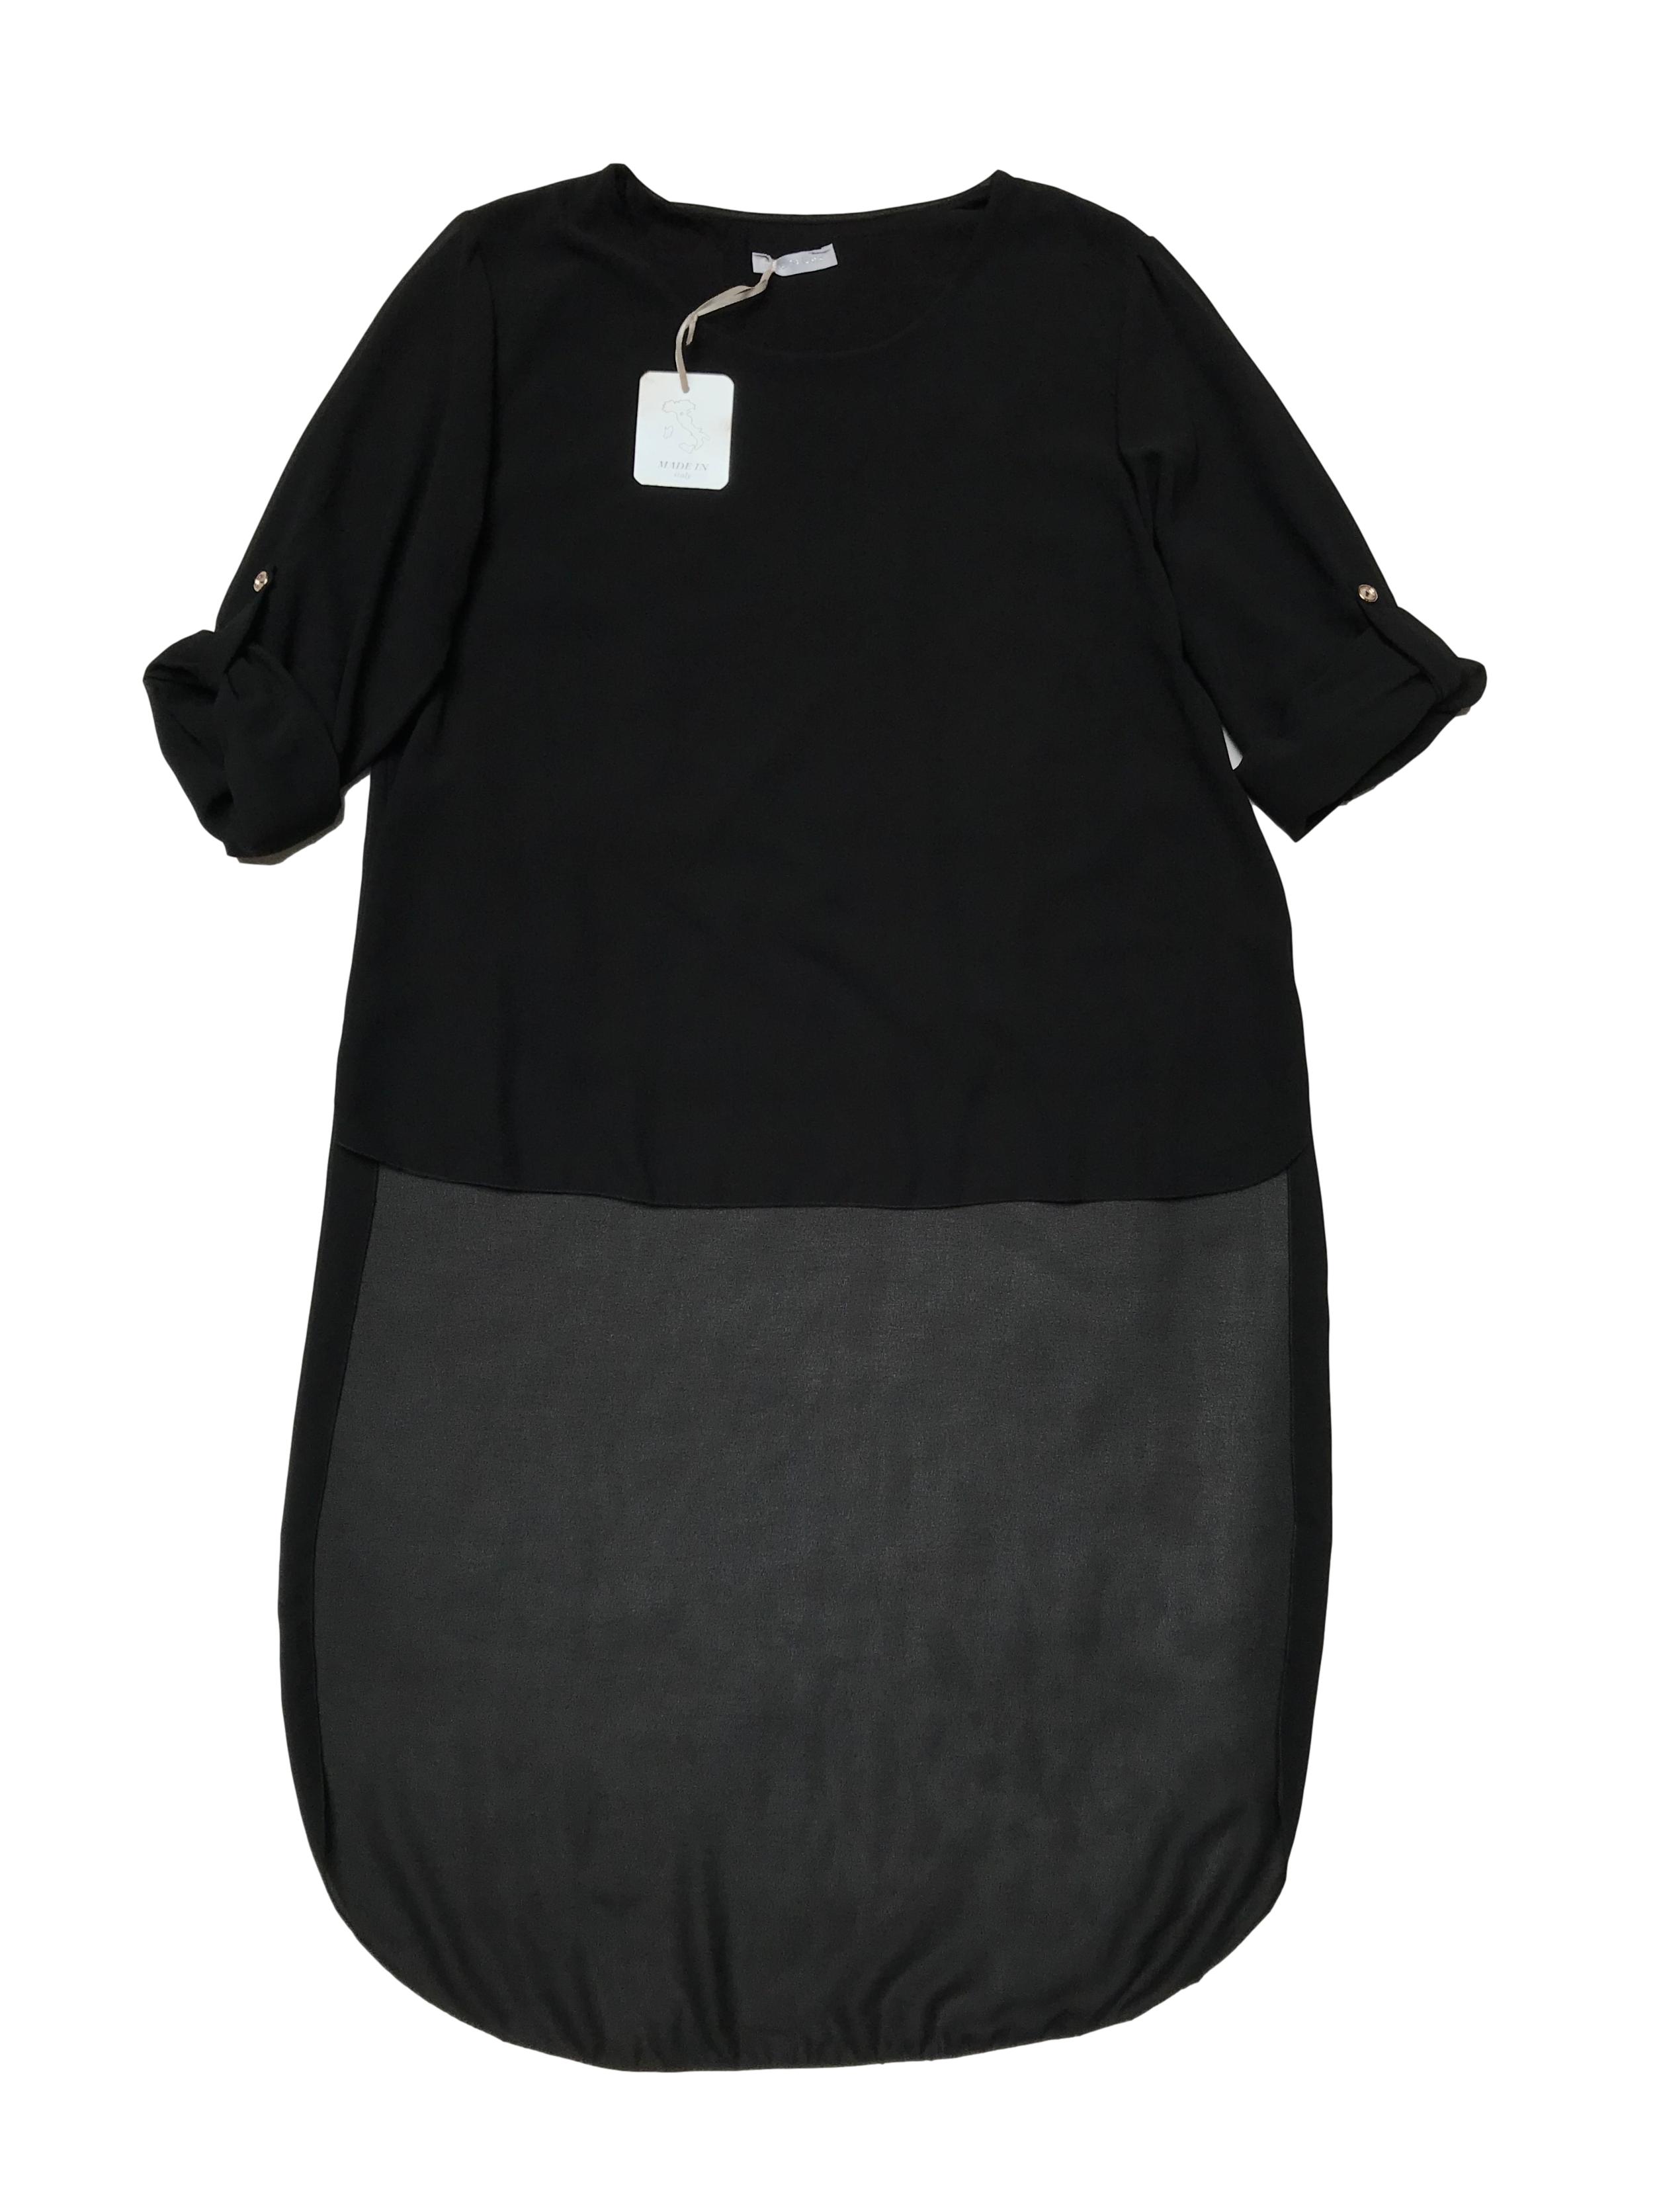 Blusa asimétrica de gasa negra, lleva forro y tiene mangas de largo regulable con botón. Nueva con etiqueta. Busto 100cm Largo 59 - 110cm